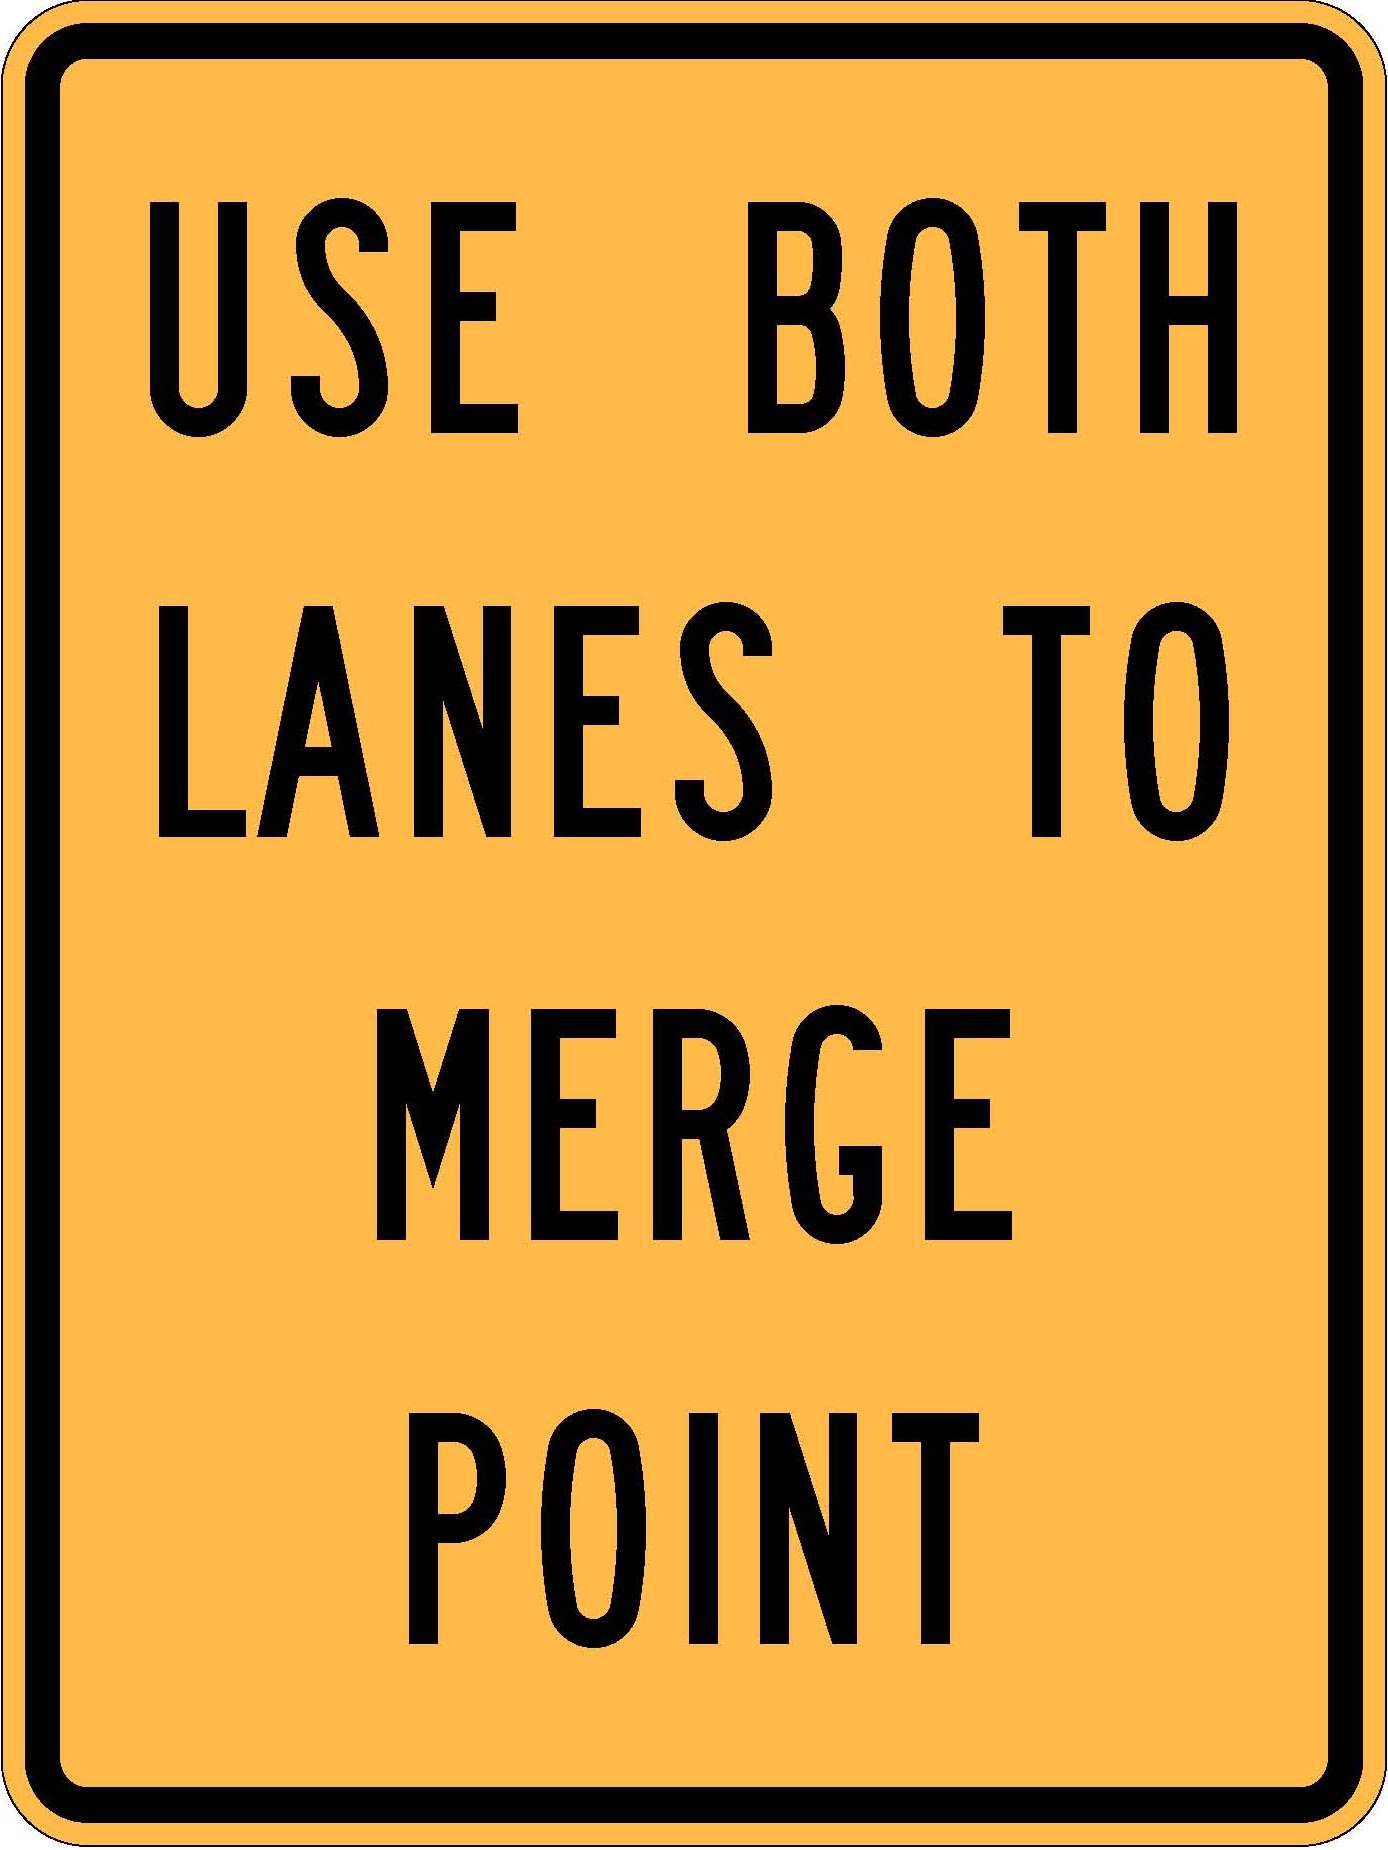 W4-51 Use Both Lanes To Merge Point.JPEG detail image